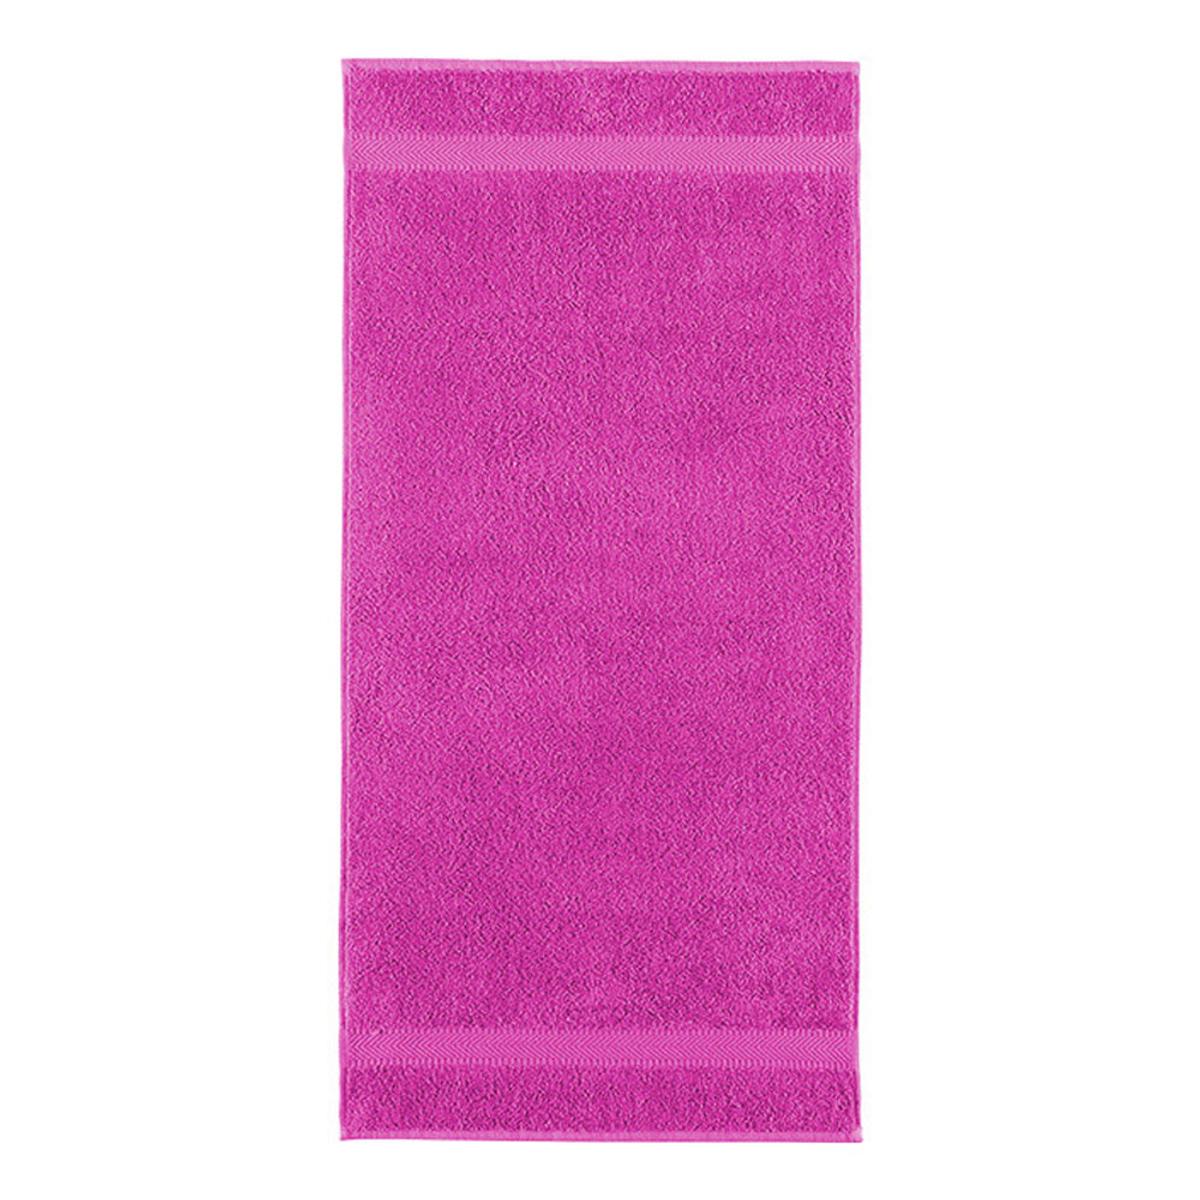 Ręcznik Imperial Trend 041 /różowy ESTELLA ATELIERS - 3